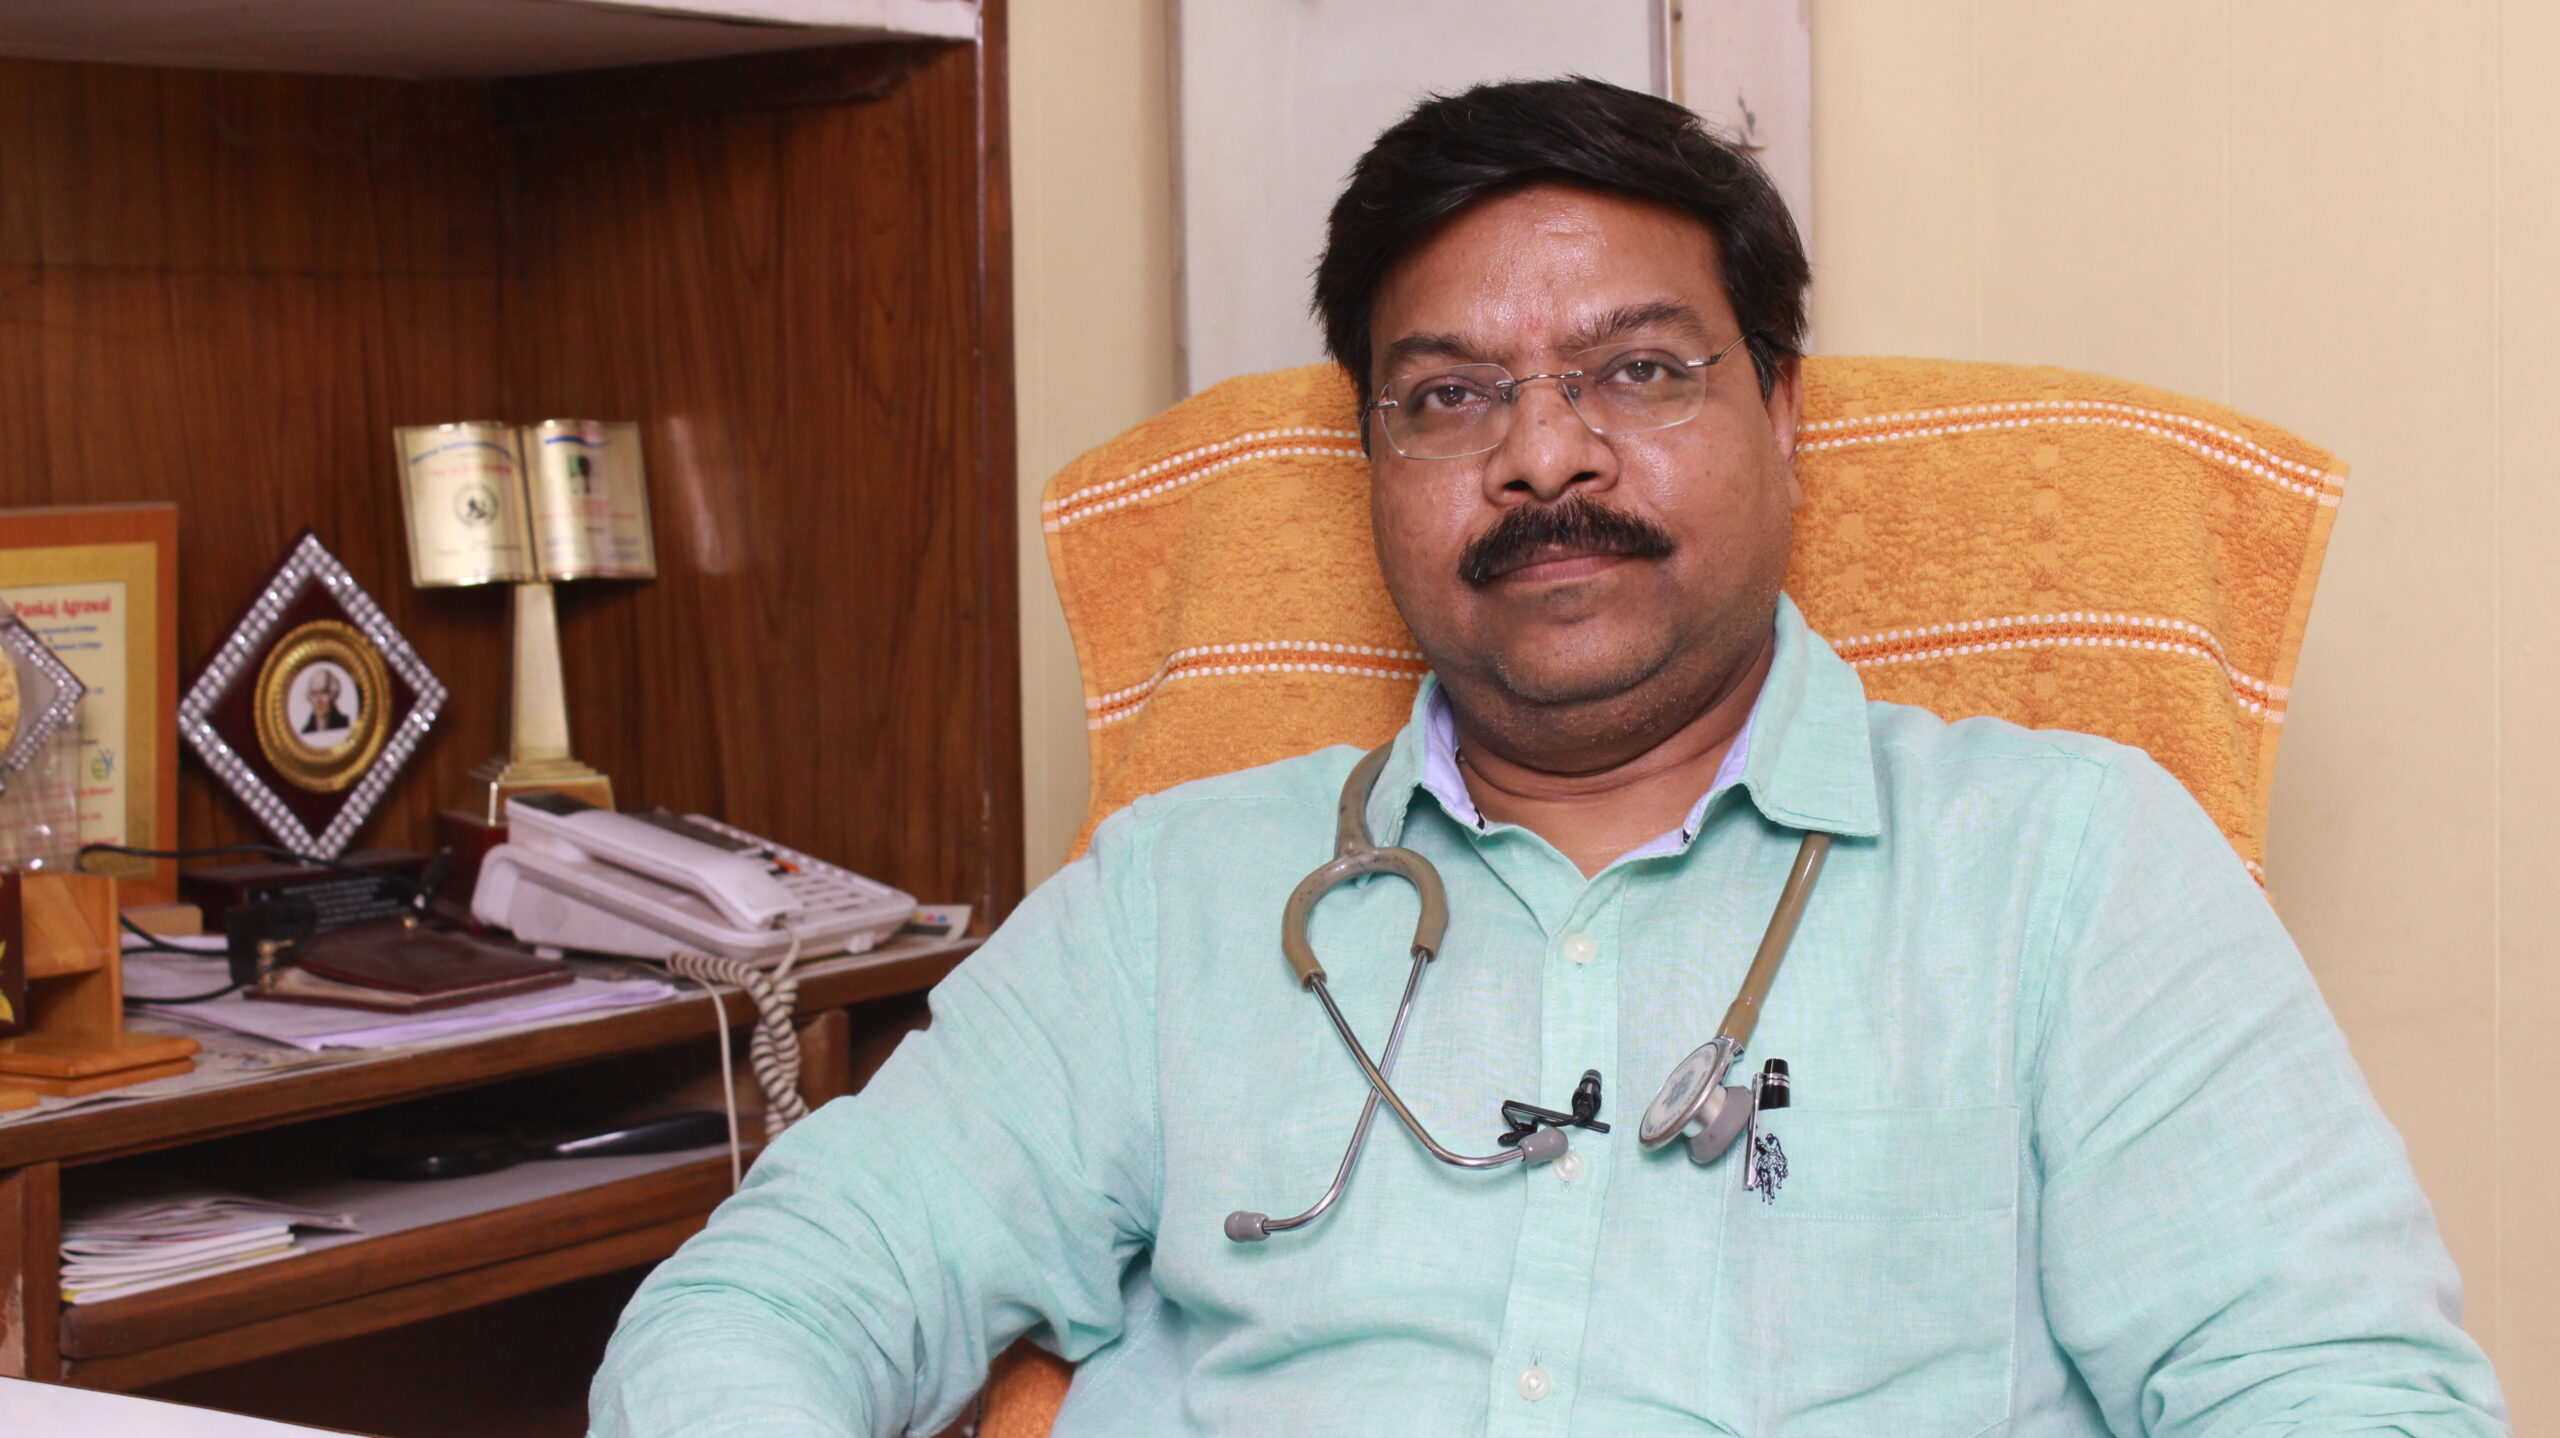 Dr Pankaj Aggarwal